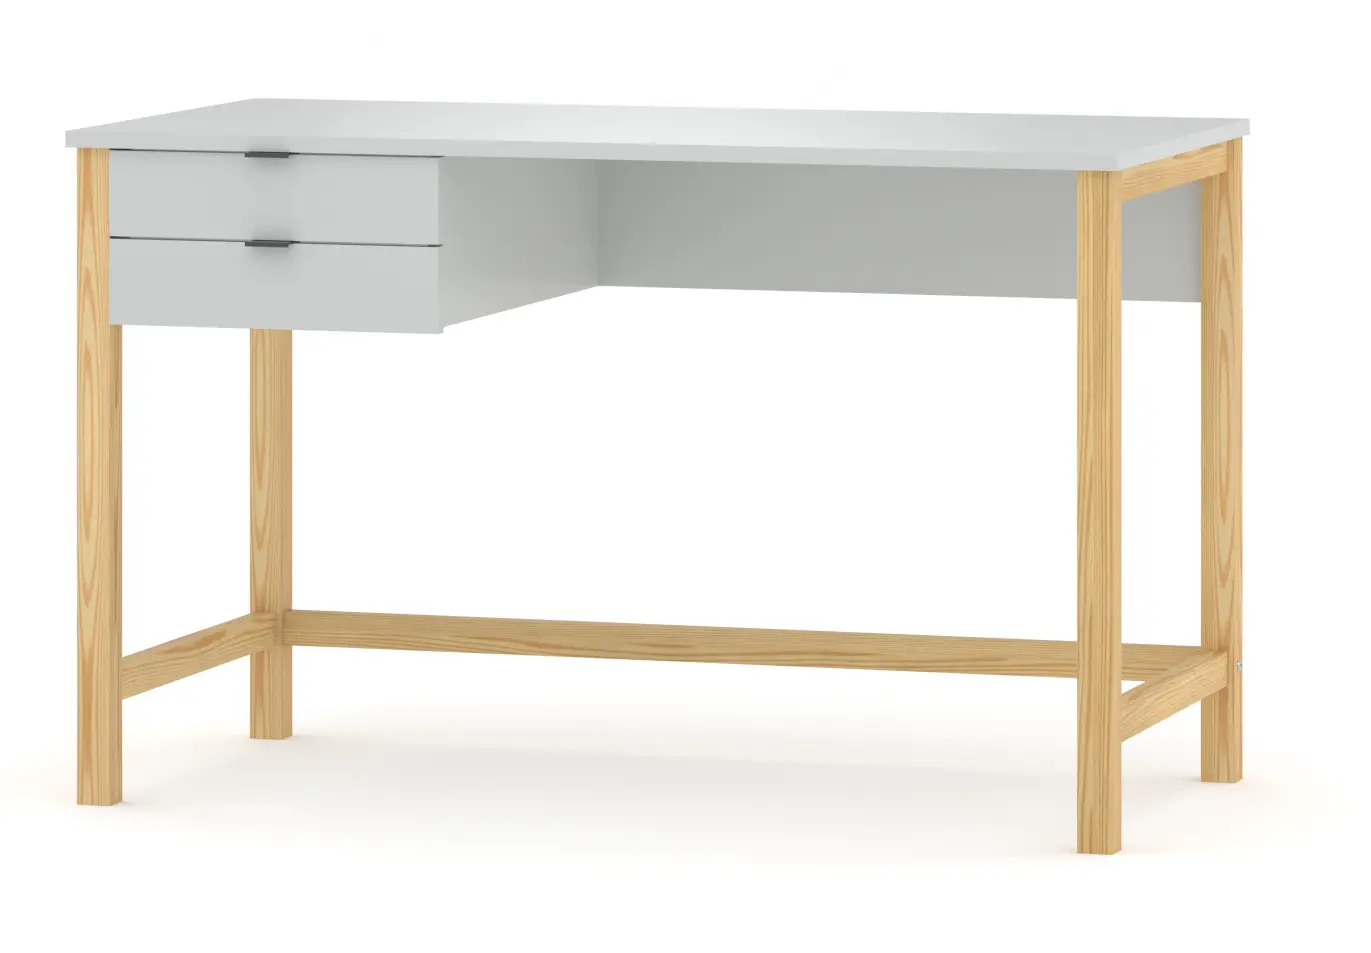 Schreibtisch Holz&MDF Grau 120x60